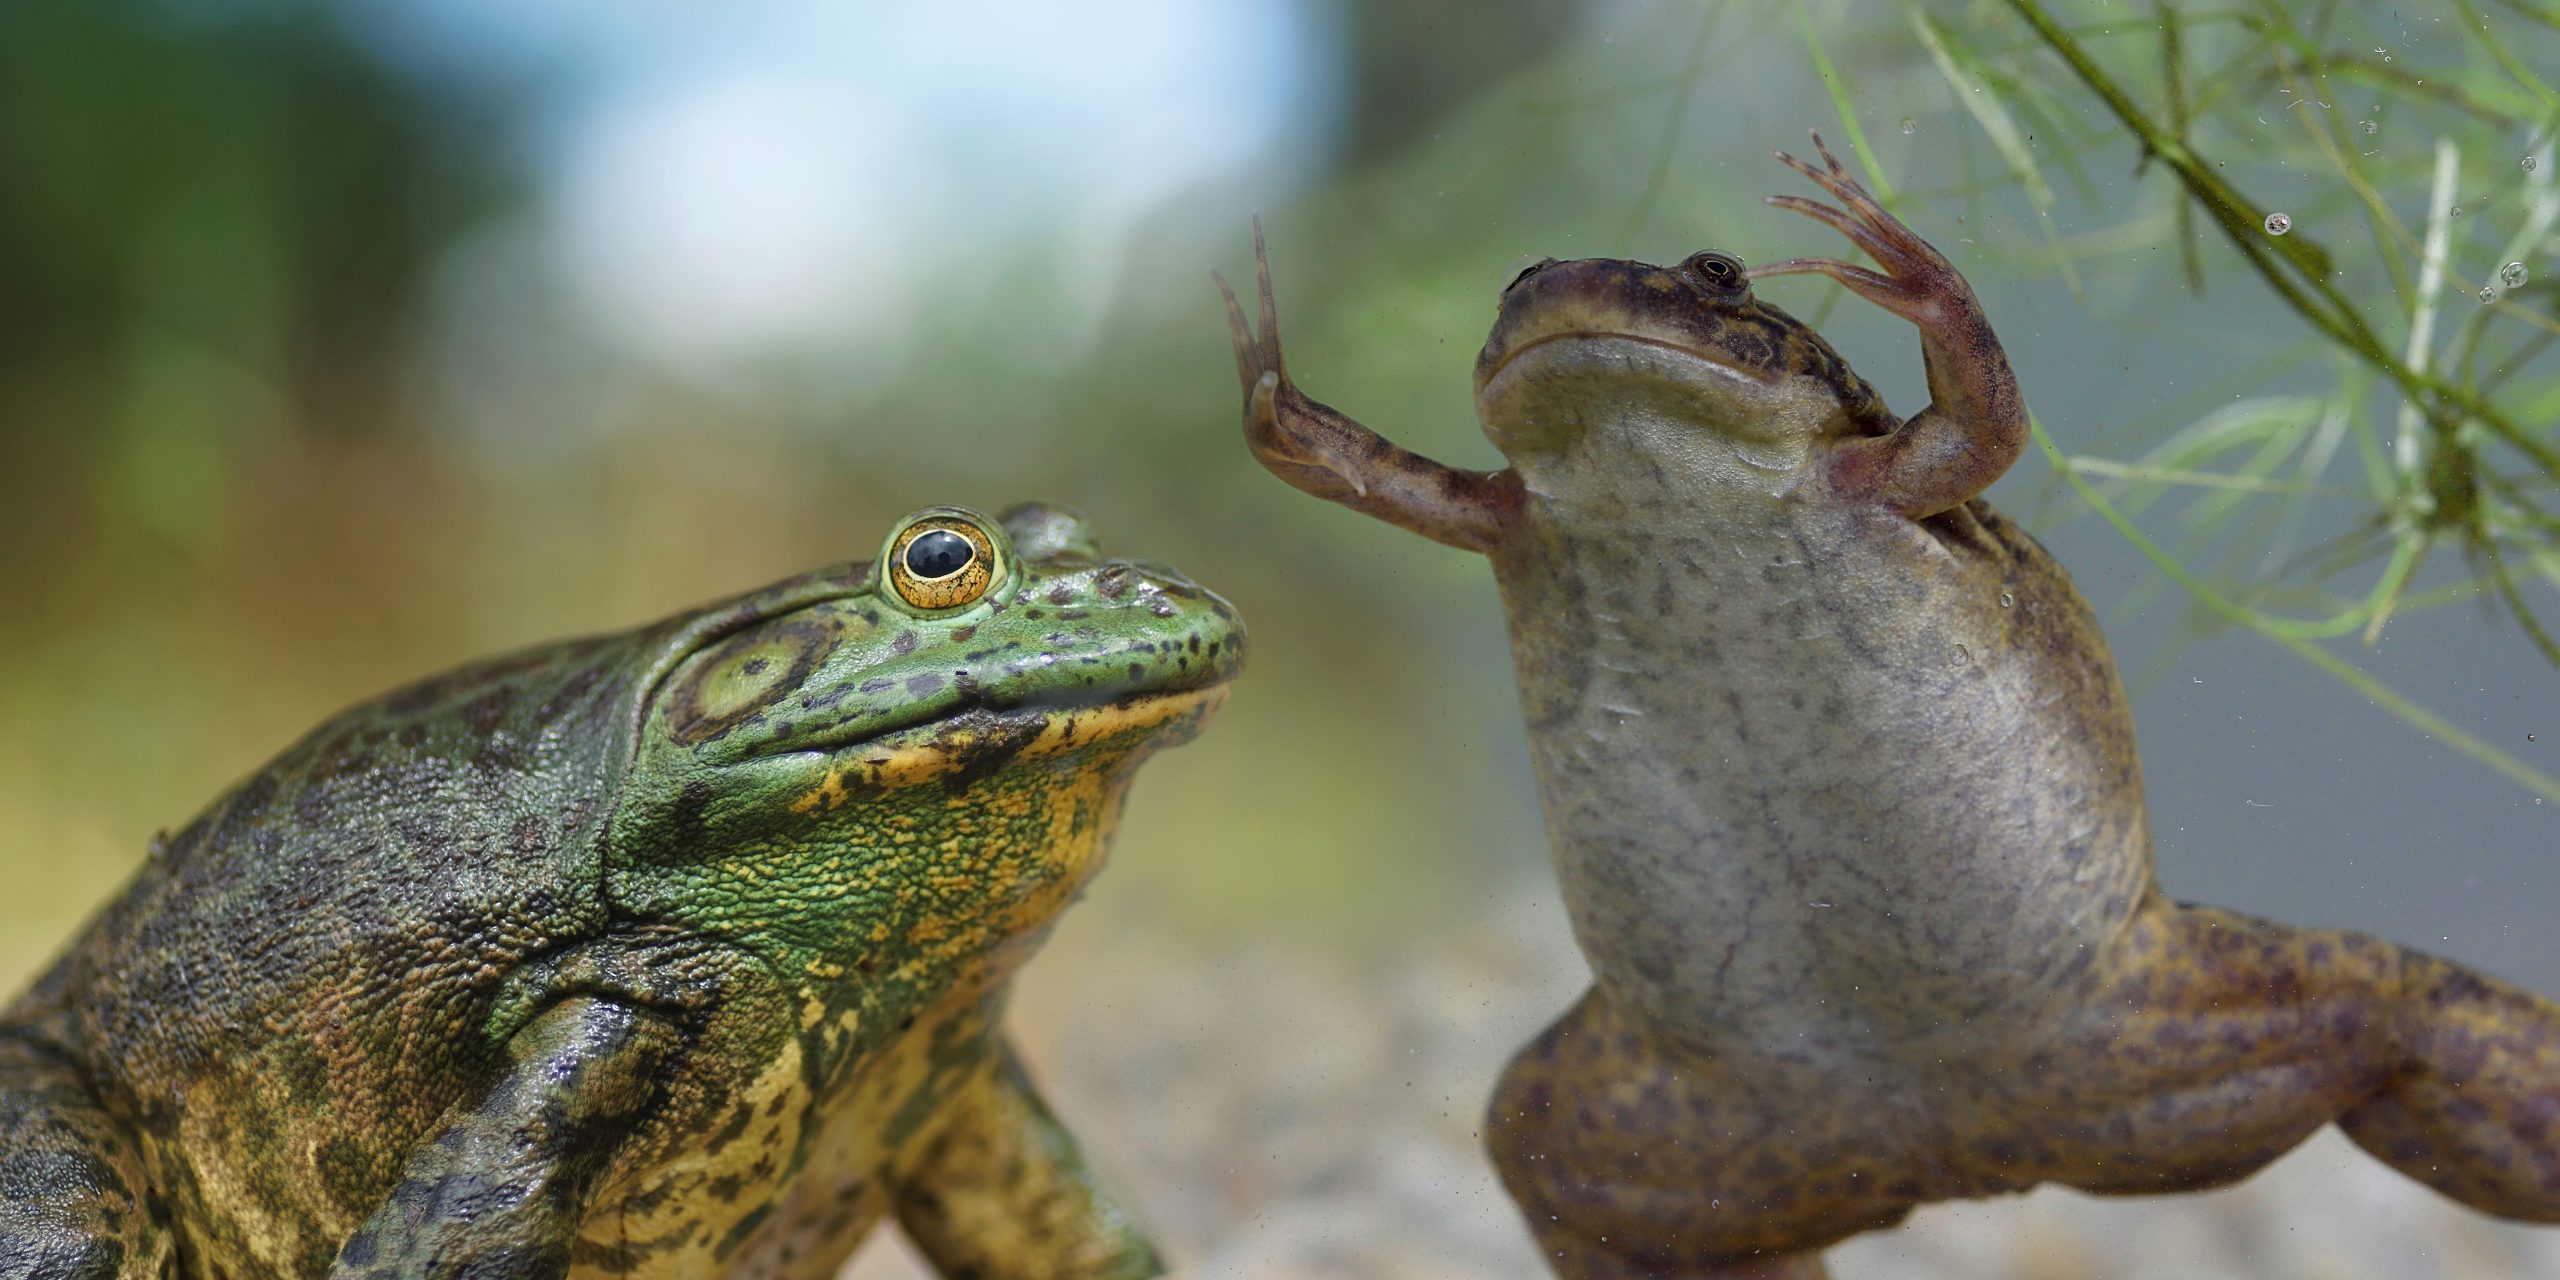 Management of invasive alien amphibians: technical sheets